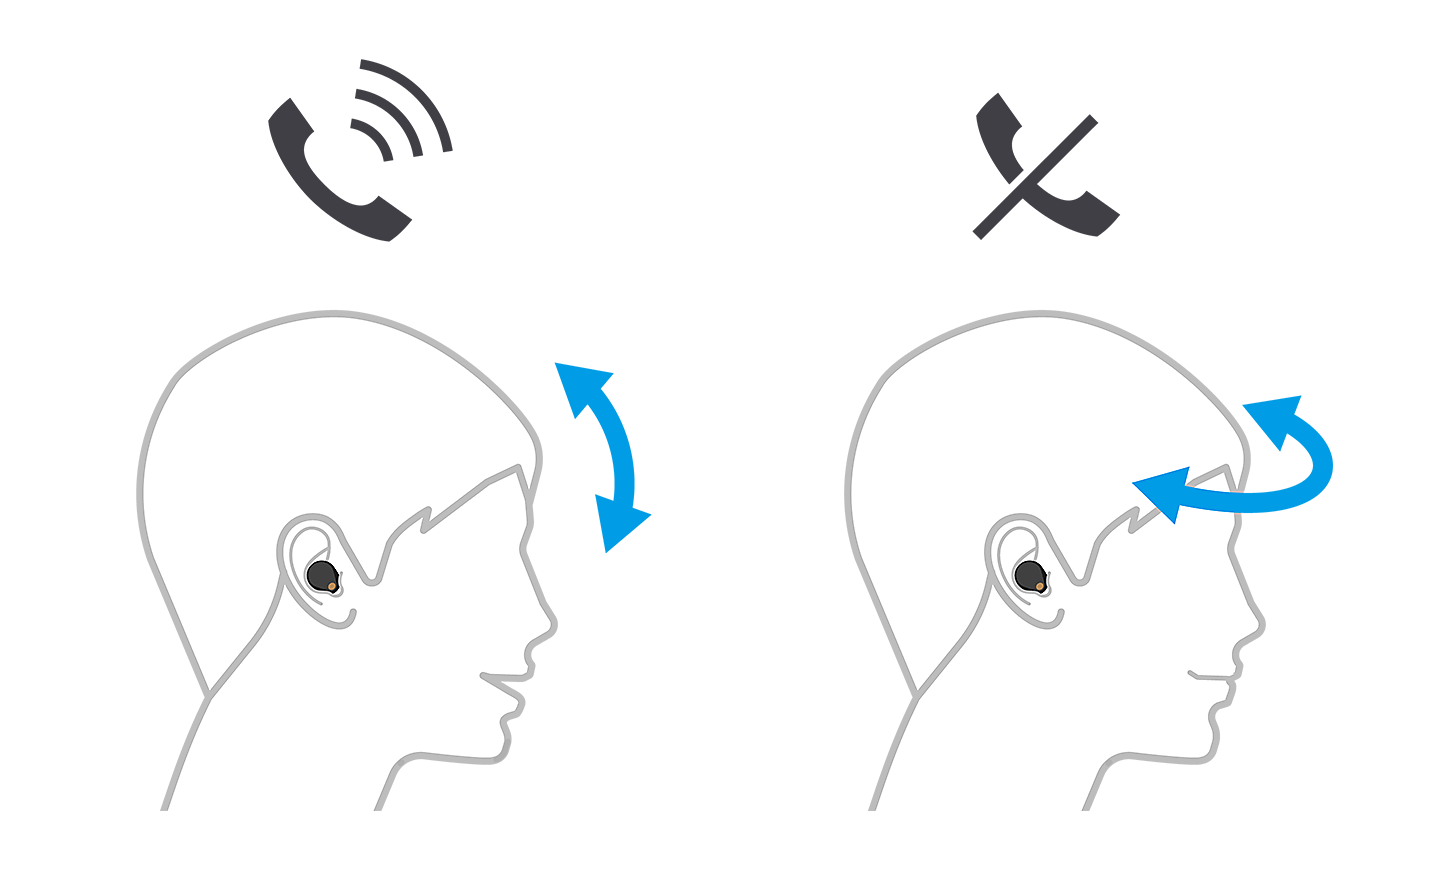 Slika dveh glav, leva sprejema klic s puščicama navzgor in navzdol, desna zavrača klic s puščicama levo in desno